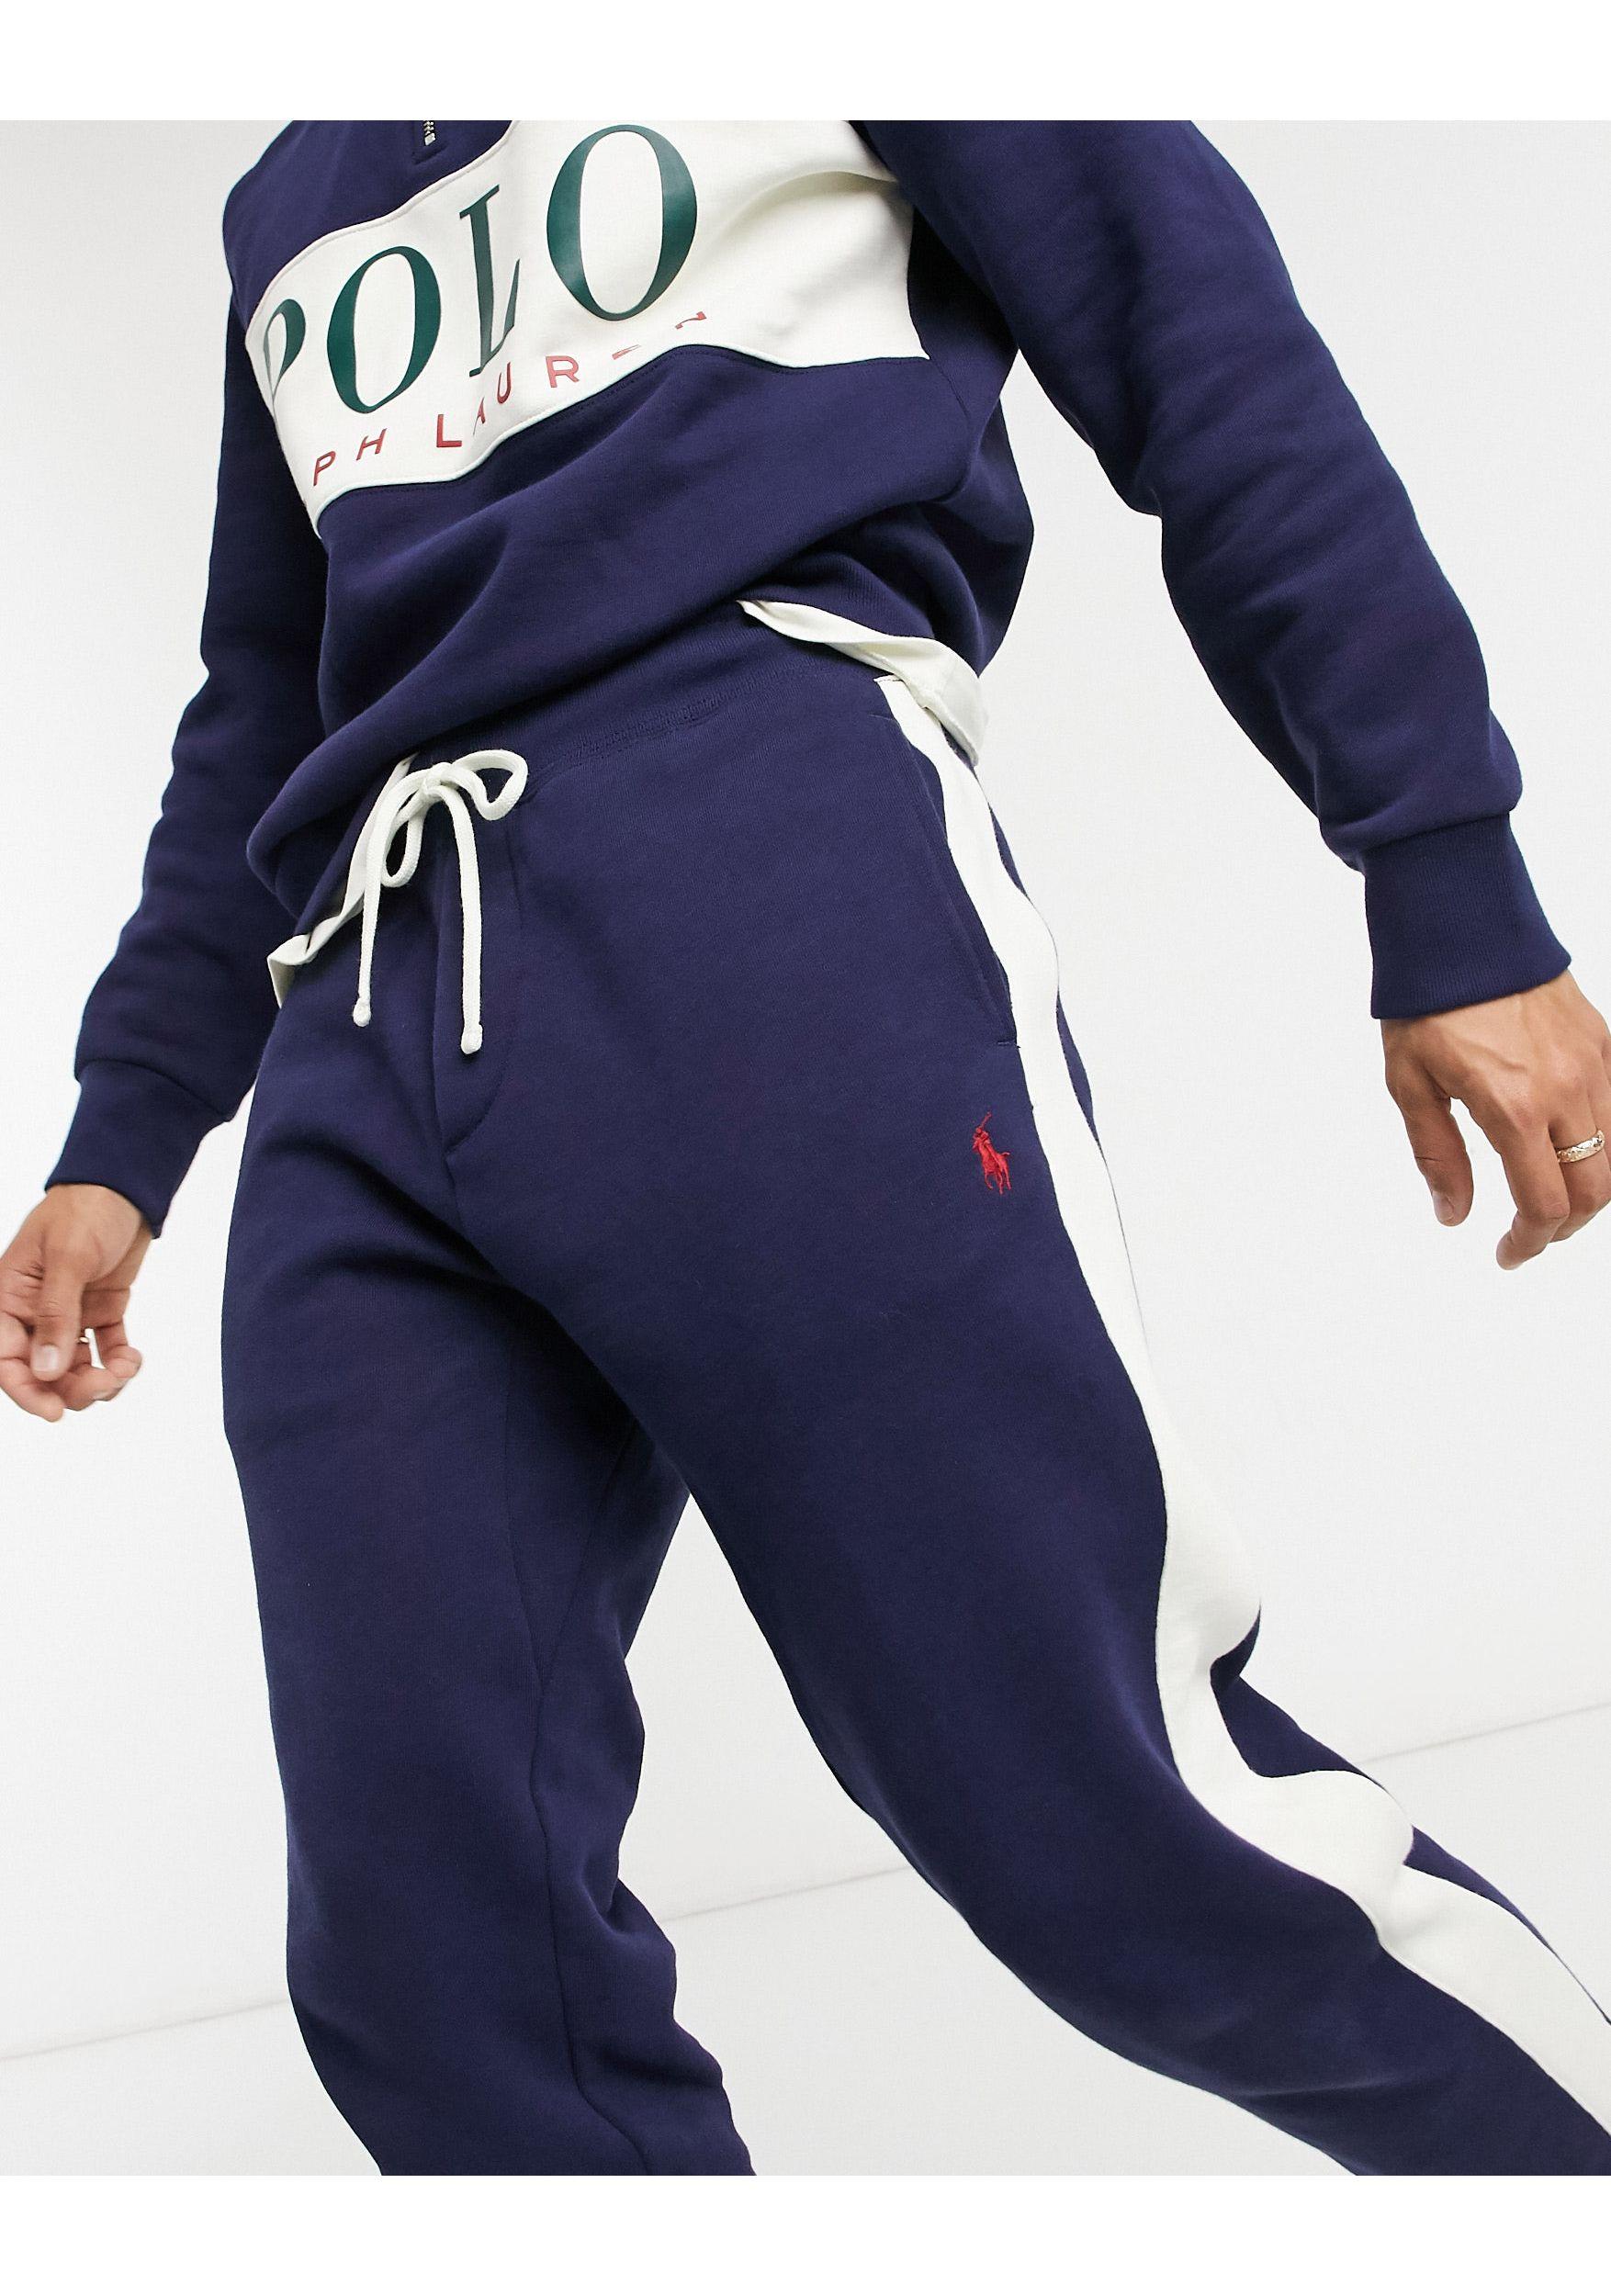 te rechtvaardigen lijden eetbaar Polo Ralph Lauren X asos – exclusive collab – jogginghose in Blau für  Herren | Lyst AT